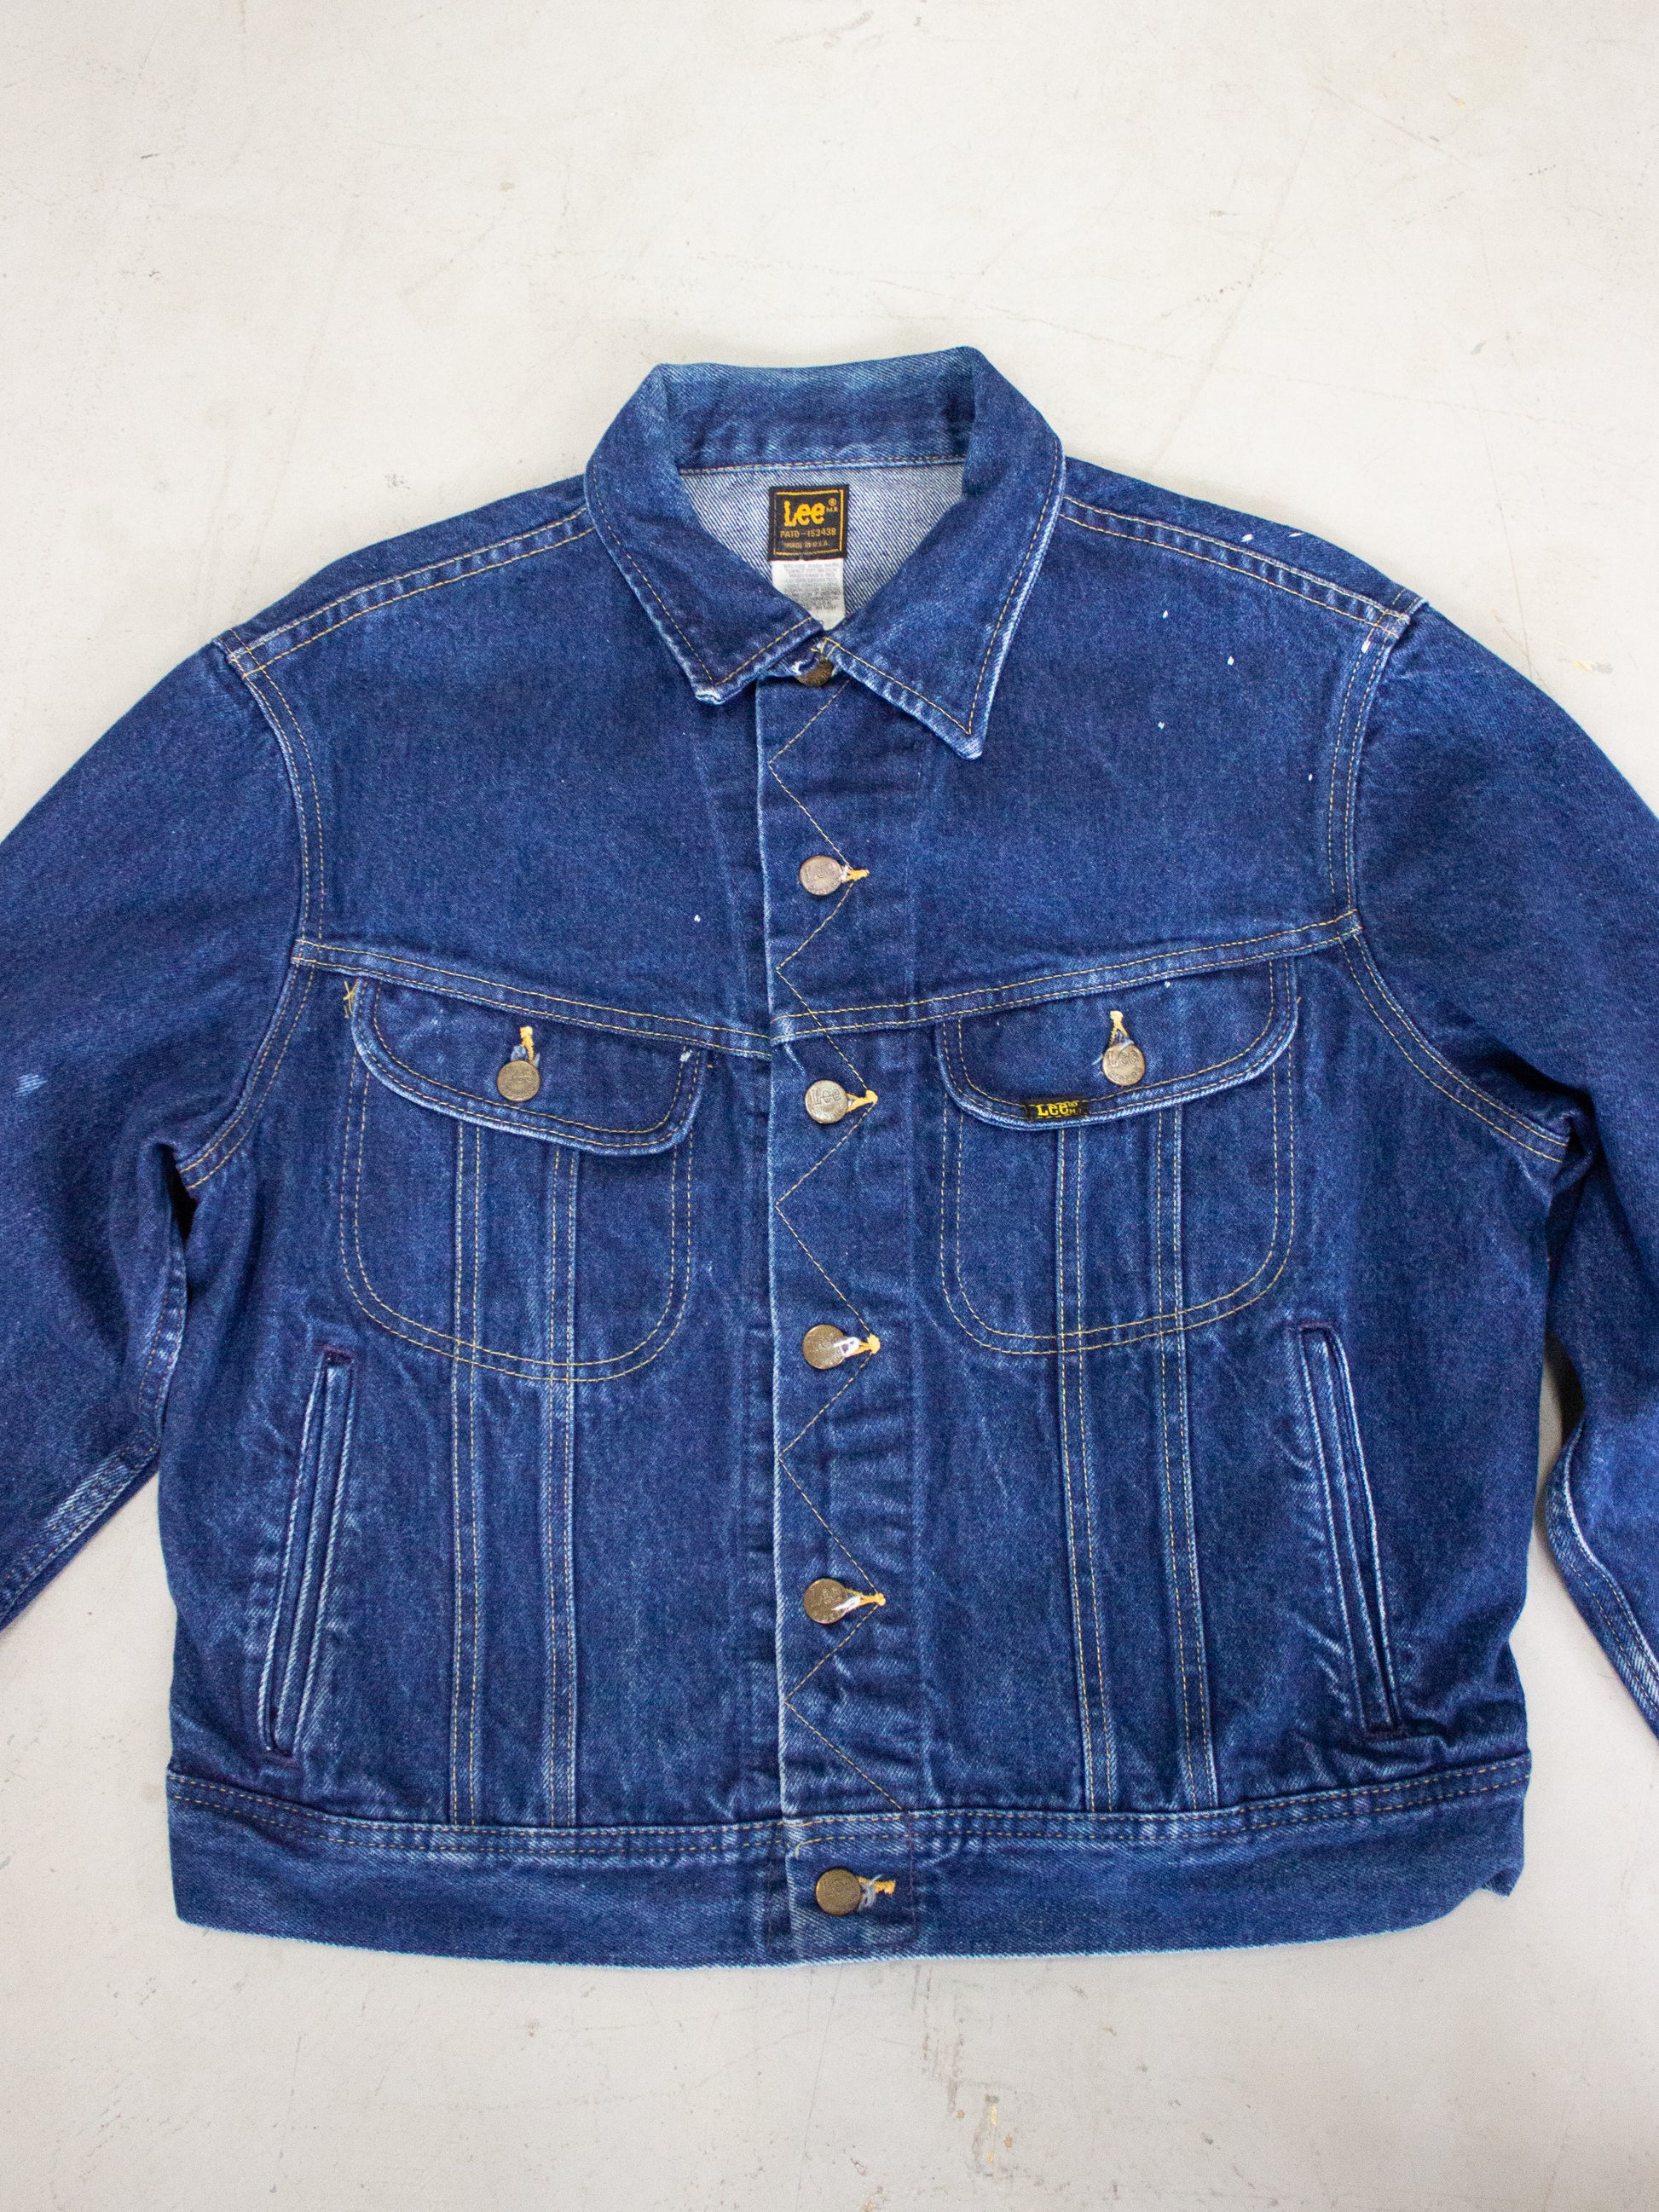 Vintage 1980's Lee Riders Jean Jacket Made In USA Dark Wash PATD-153438  (Large) – lacaravanevintage